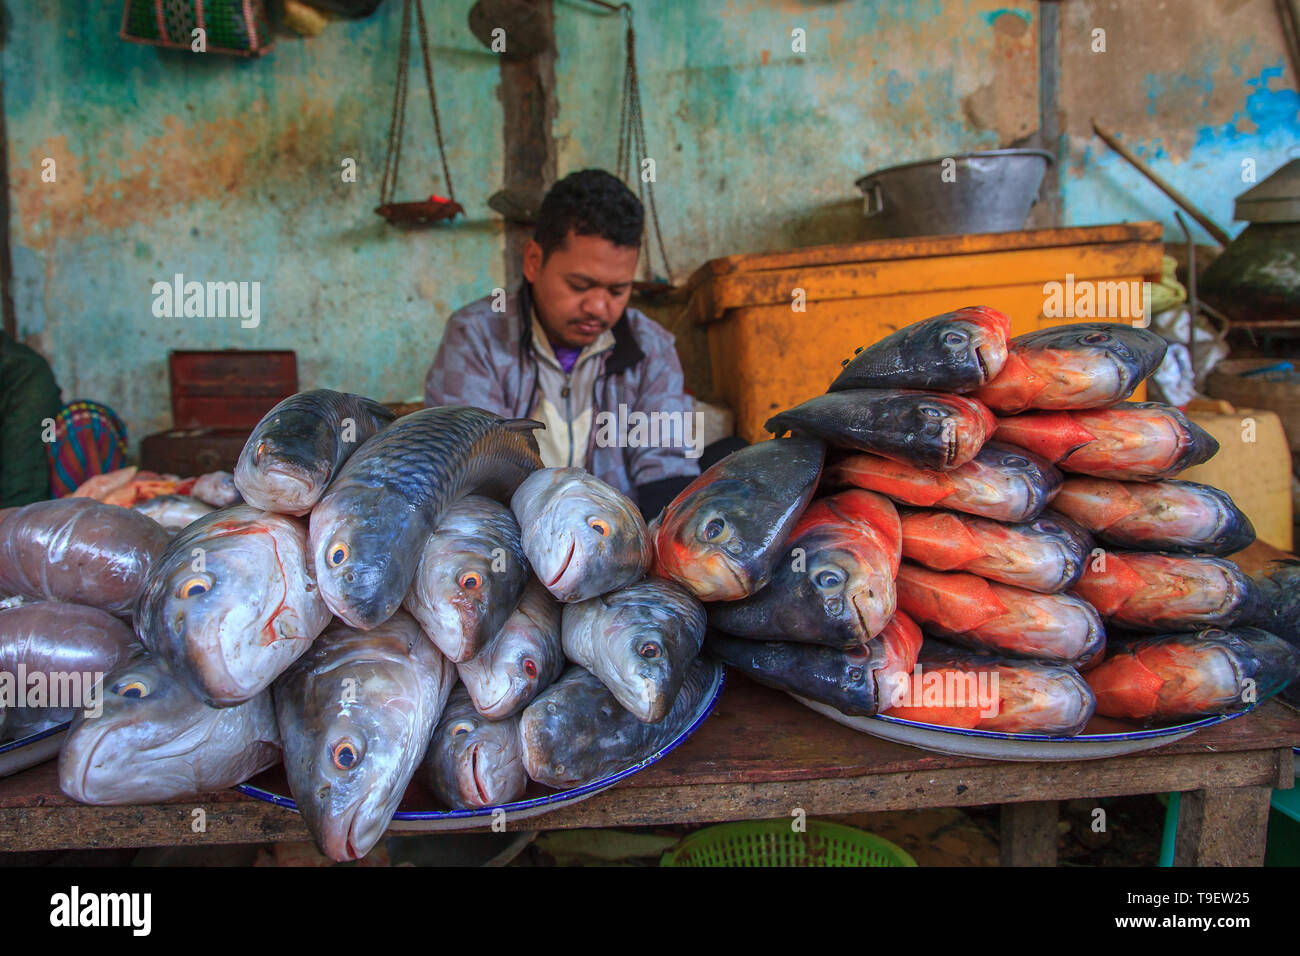 38/5000 Fish seller at the Bagan market Stock Photo